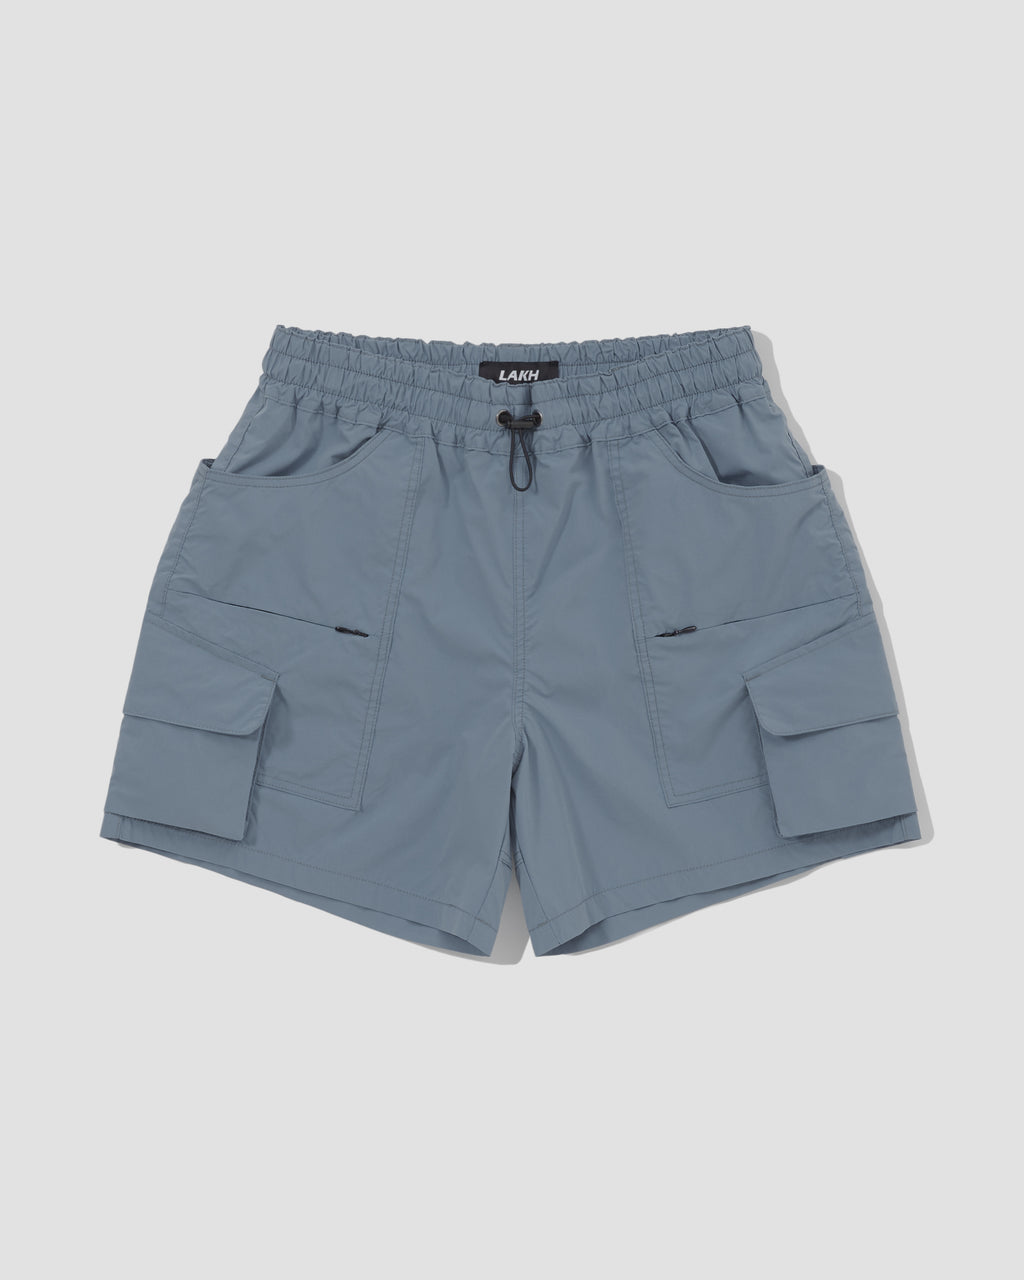 Field Shorts - Stone